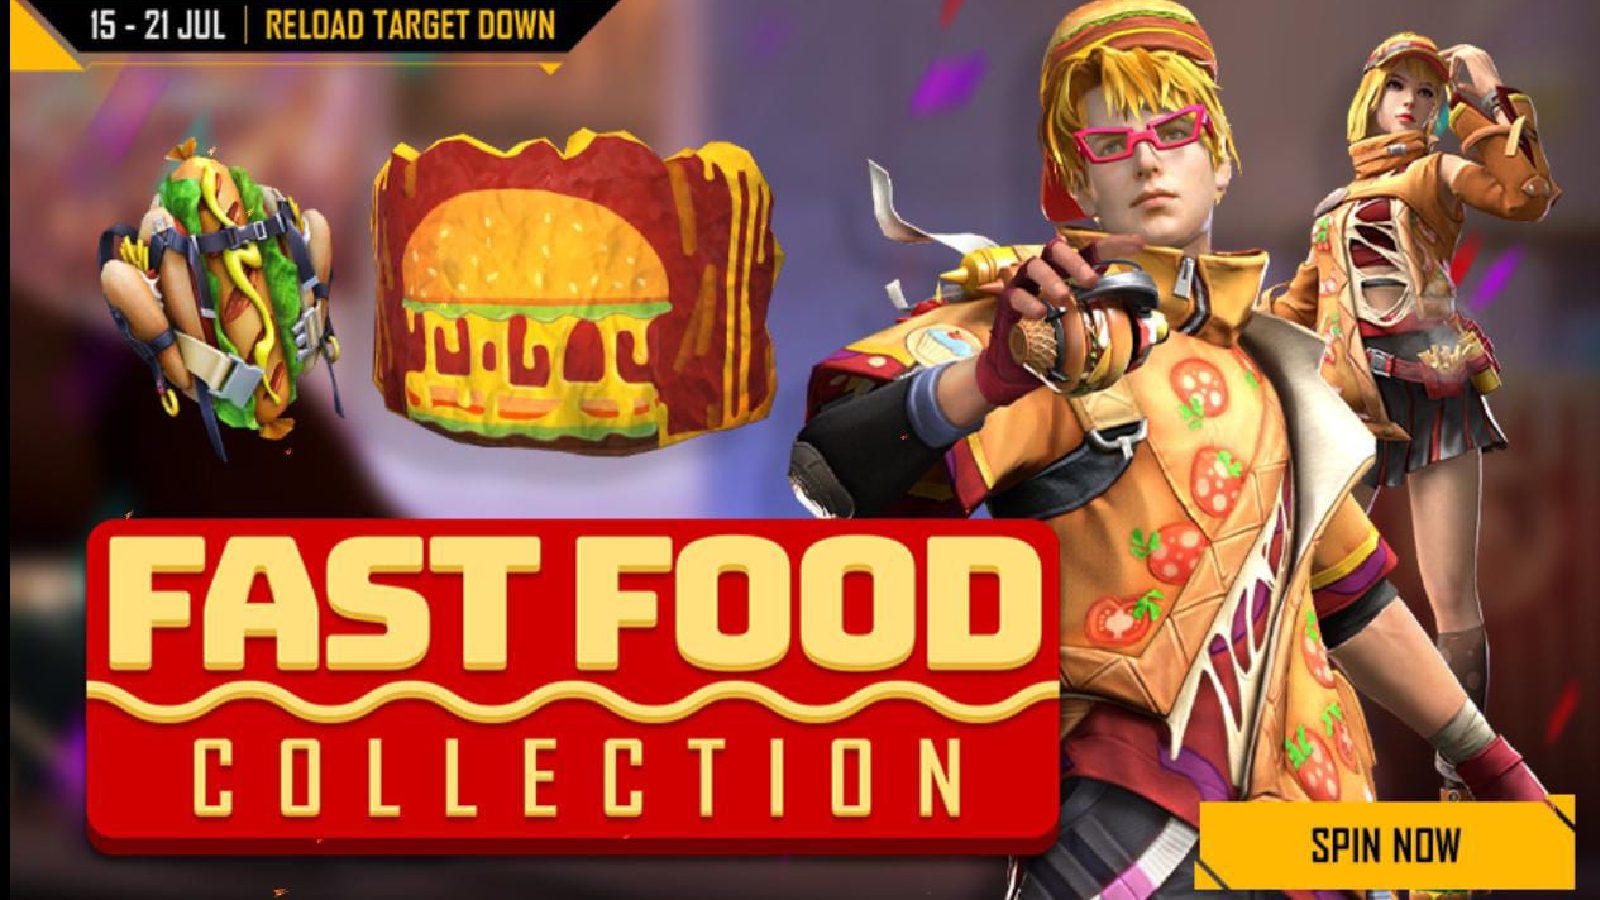 Бесплатное событие Fire Reload Target Down: получите коллекции фаст-фуда и вкусности на тему гамбургеров.